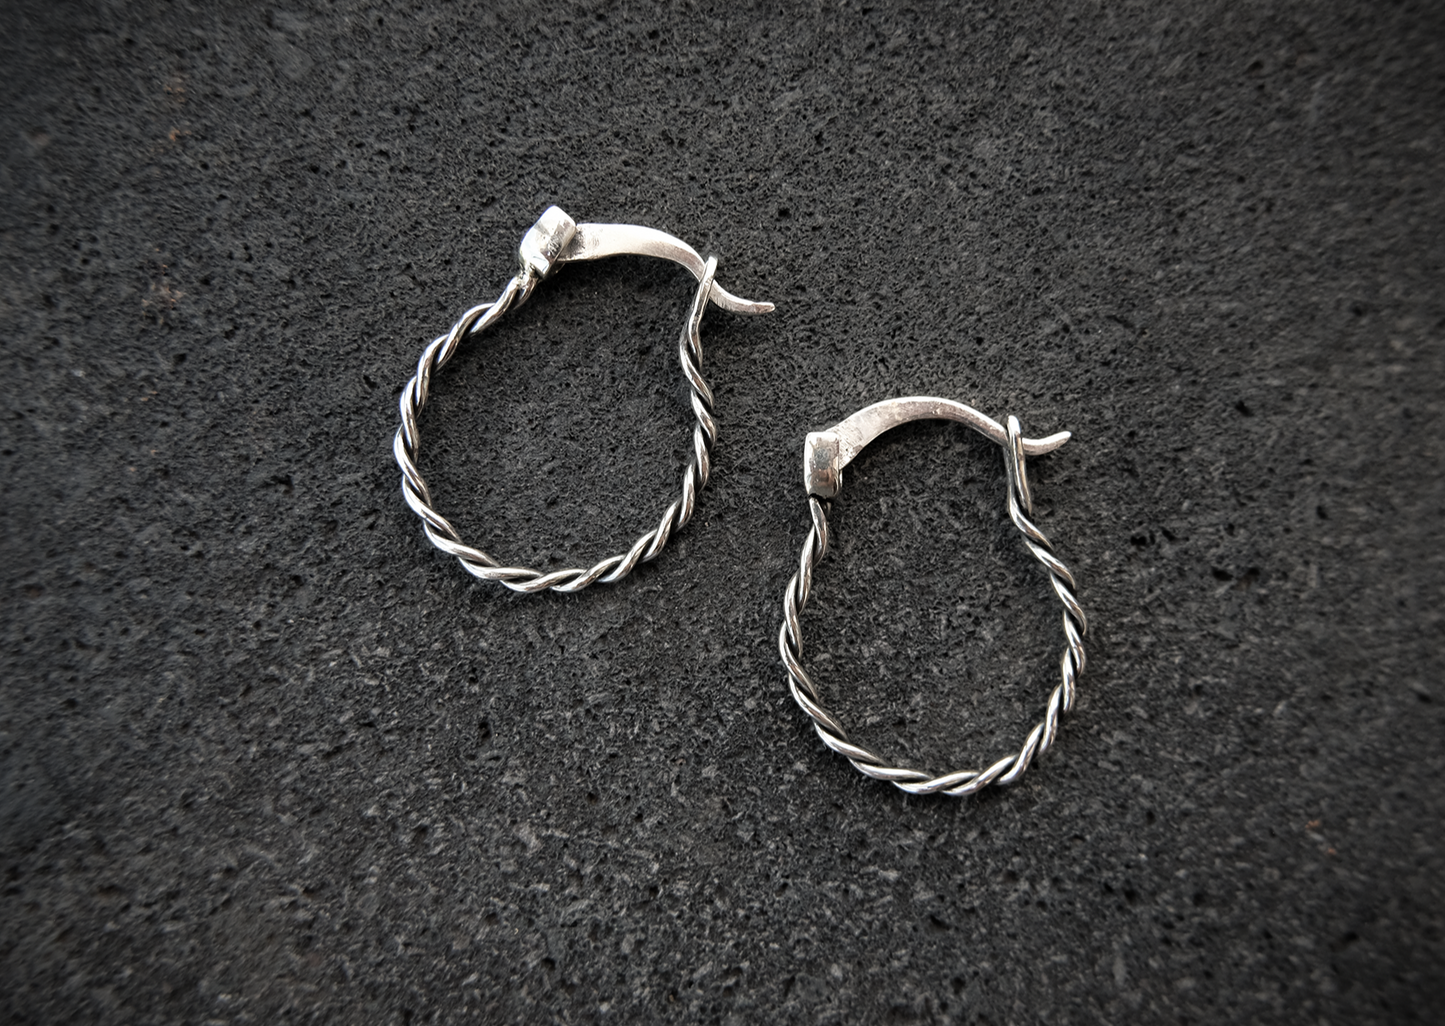 Braided Silver Hoop Earrings